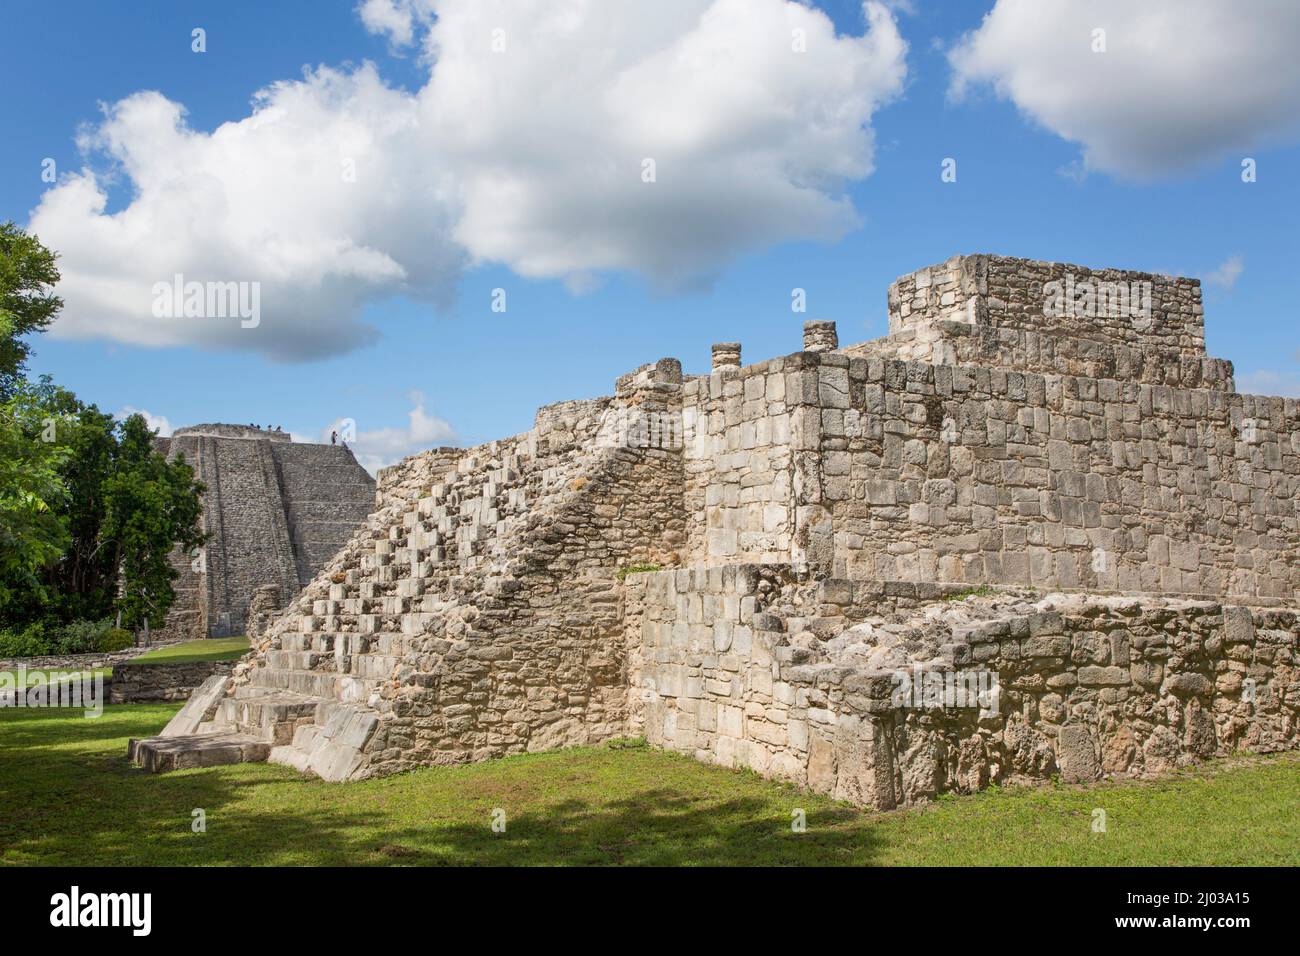 Templo de la Tortuga en primer plano, Templo Kukulcan (Castillo) en el fondo, Ruinas Mayas, Zona Arqueológica Mayapan, Estado de Yucatán, México Foto de stock